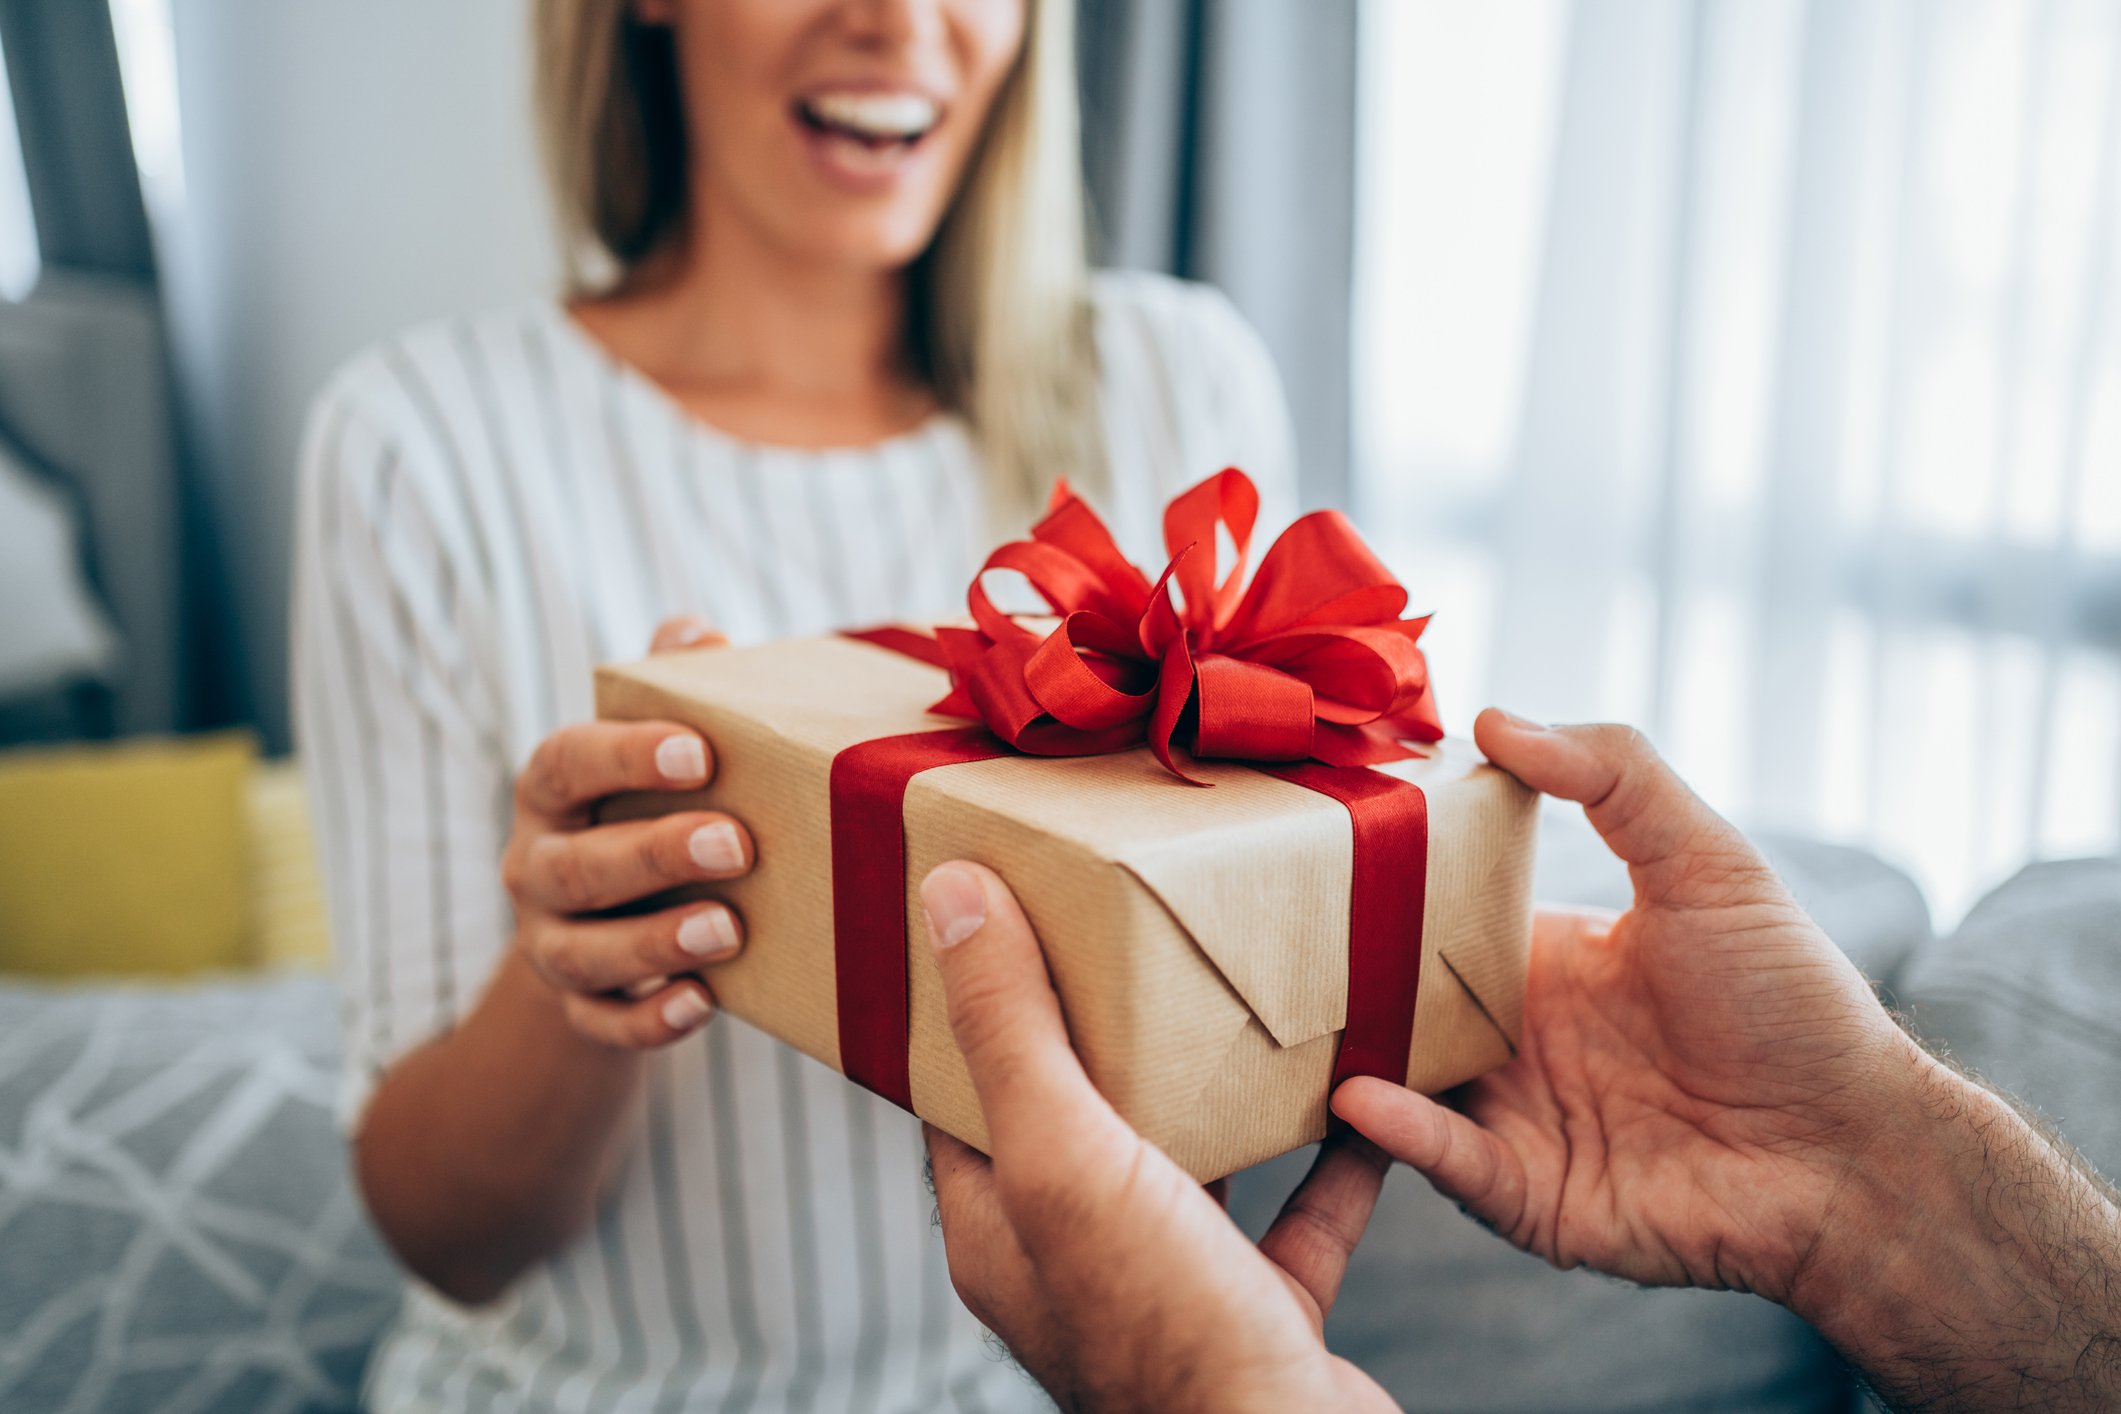 Αγίου Βαλεντίνου: Αυτές είναι οι 3 top ιδέες δώρων για να μην αφήσεις τη σύντροφό σου παραπονεμένη!